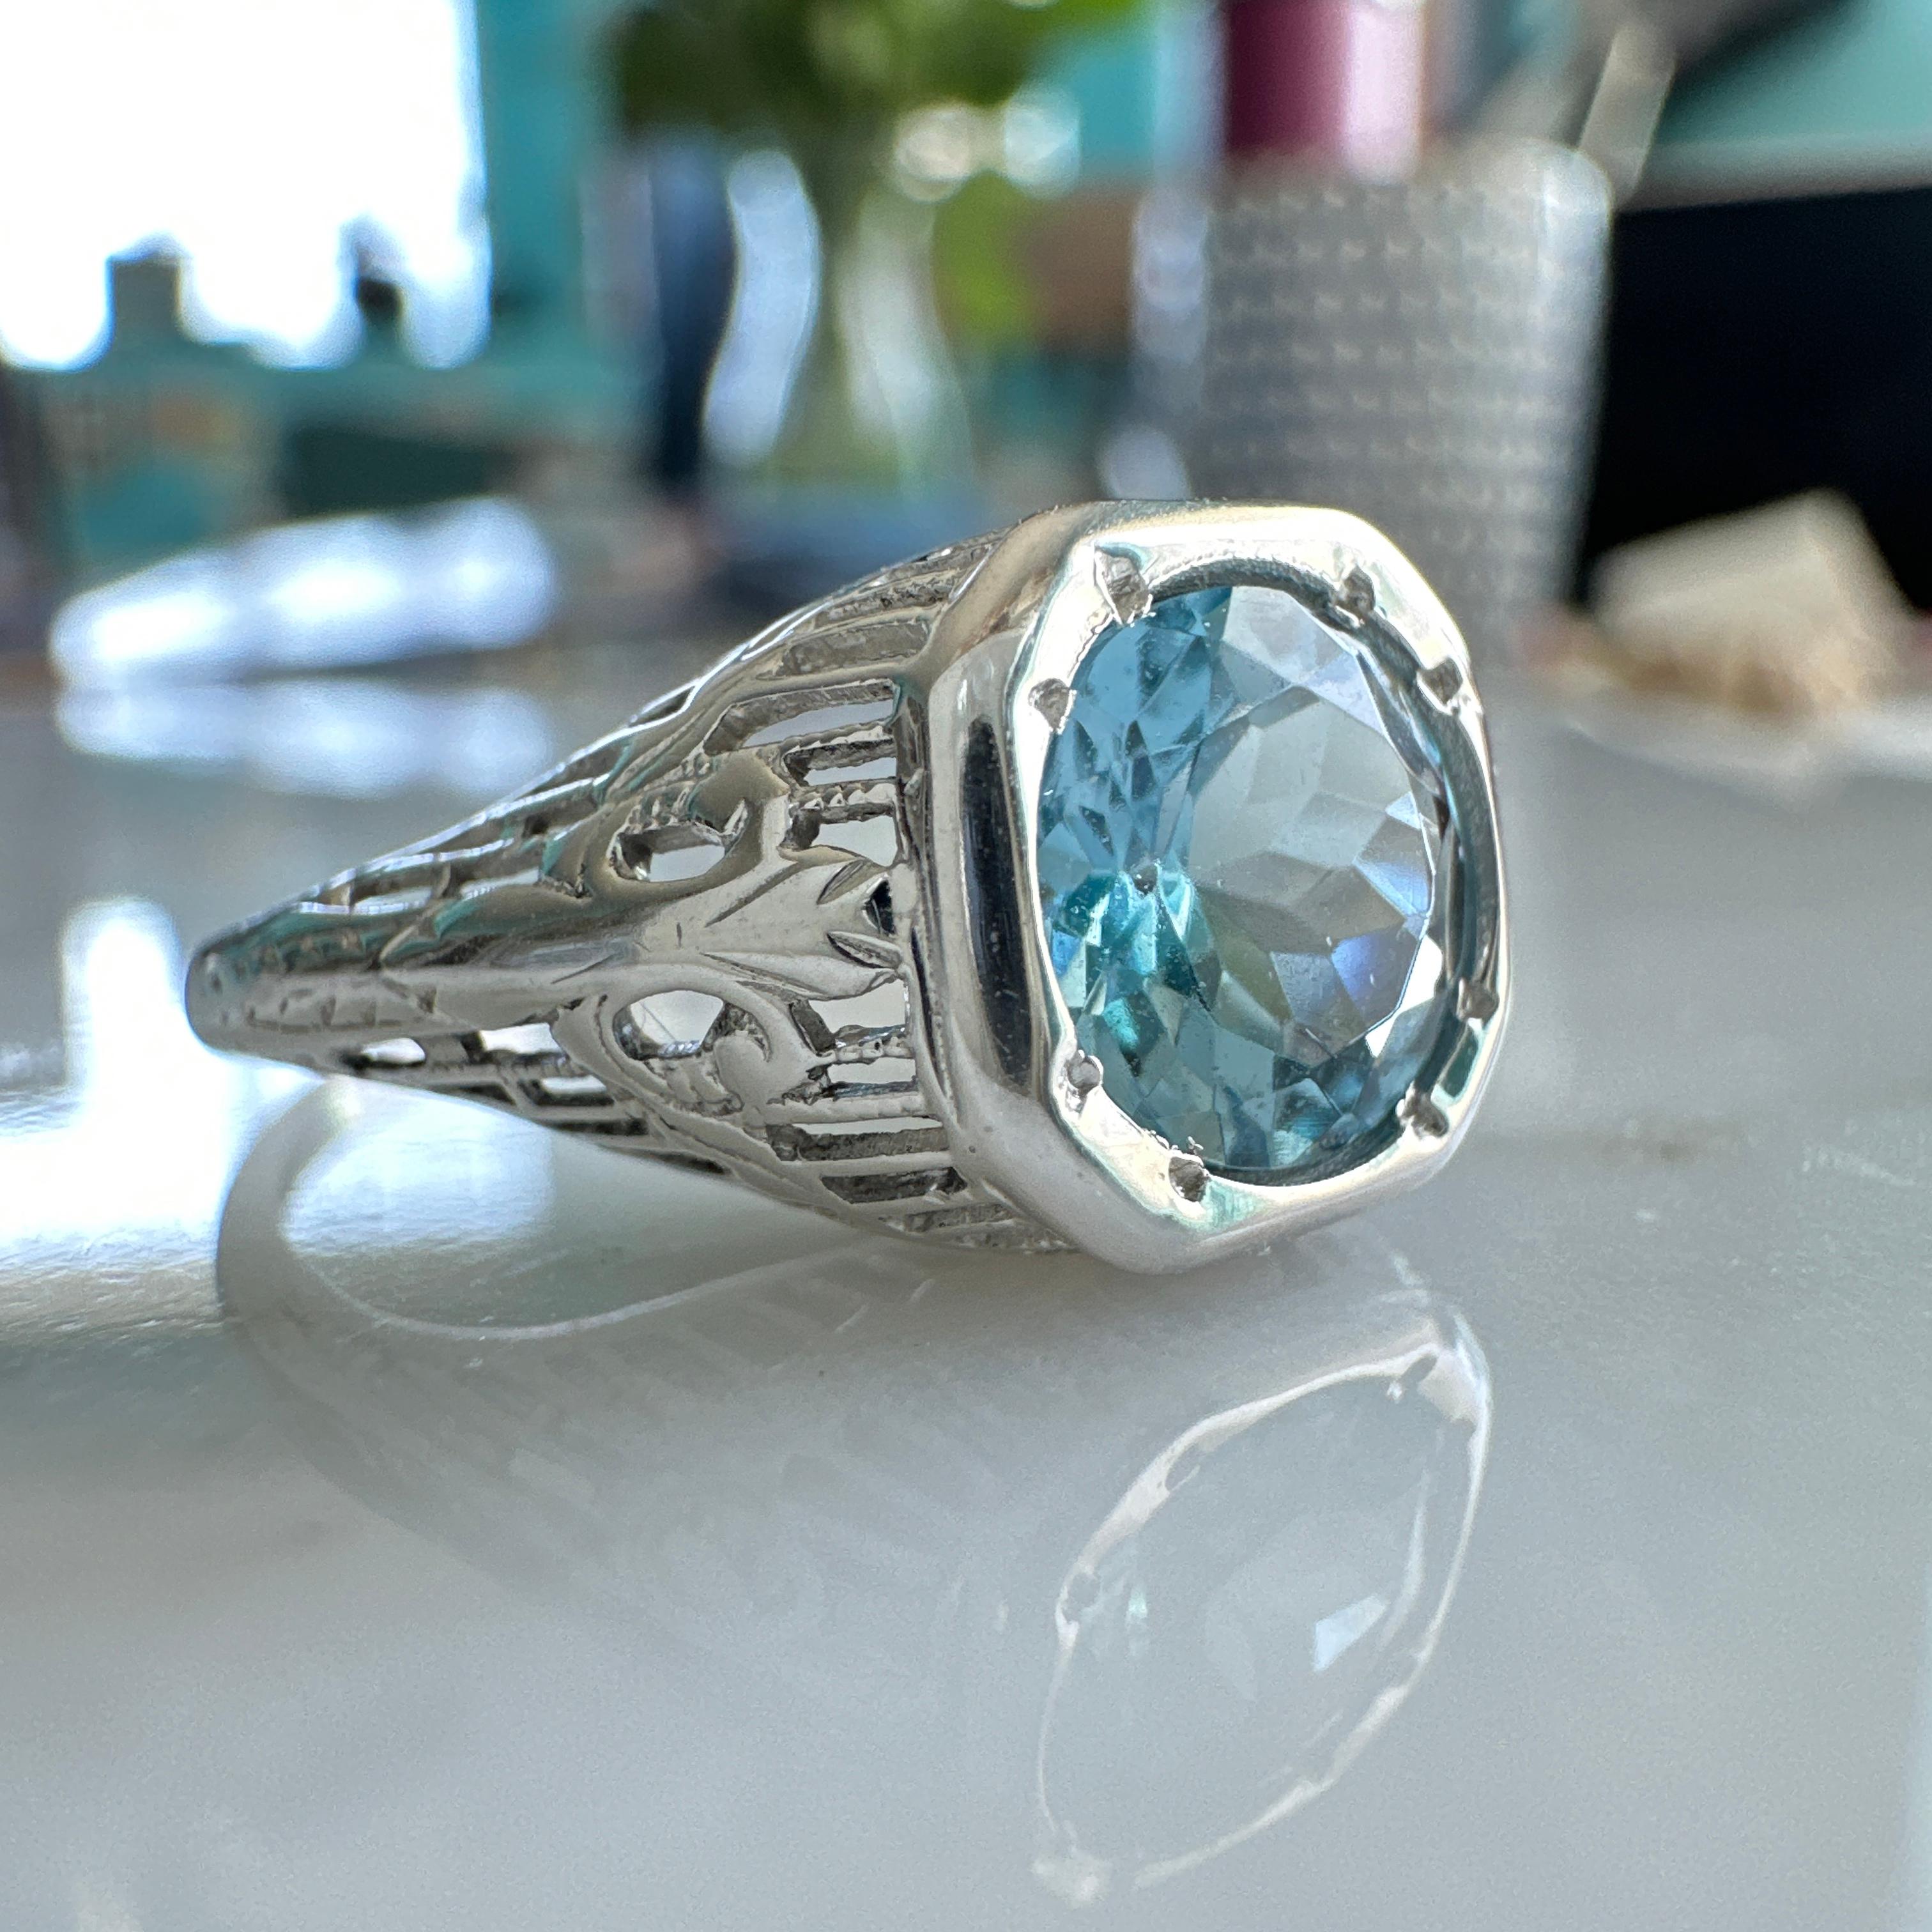 Einzelheiten: 
Schöner edwardianischer Aquamarin 18K Weißgold filigraner Ring. Dieser Ring ist sehr süß, mit feinem Filigran und winzigen französischen Fleur-de-Lis. Der Aquamarin Stein ist hell in der Farbe, aber nicht super blass mit einem schönen